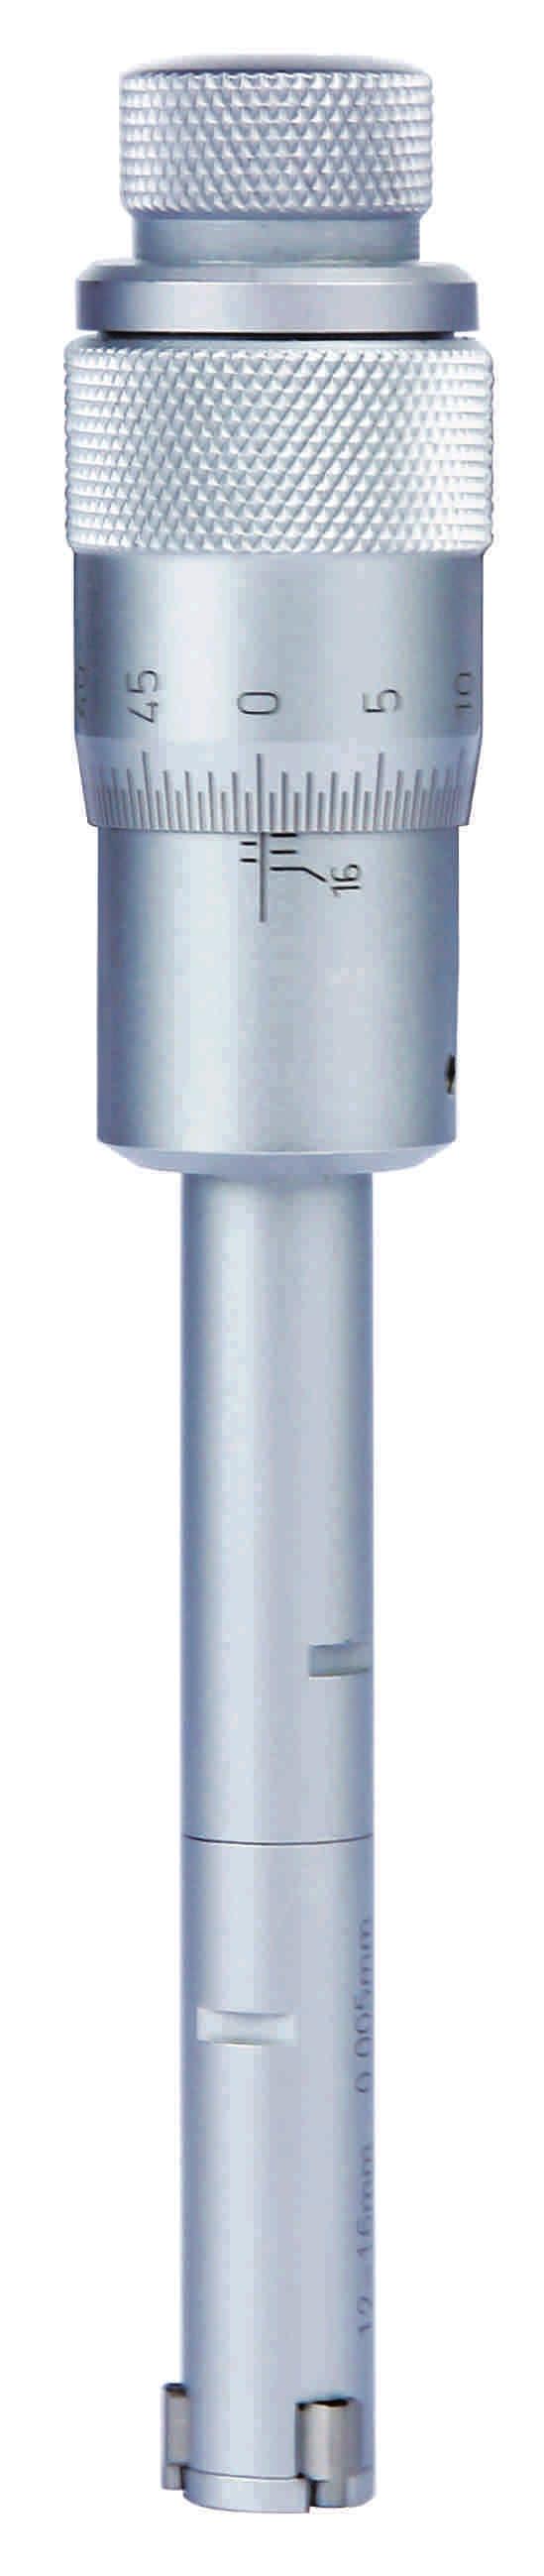 TRE PUNTE TRC3PMIC6-8 Graduazione 0,001 mm fino a 12 mm Graduazione 0,005 mm oltre i 12 mm Frizione sul codolo Punte in metallo duro intercambiabili Anello di riscontro incluso fino a 100 mm